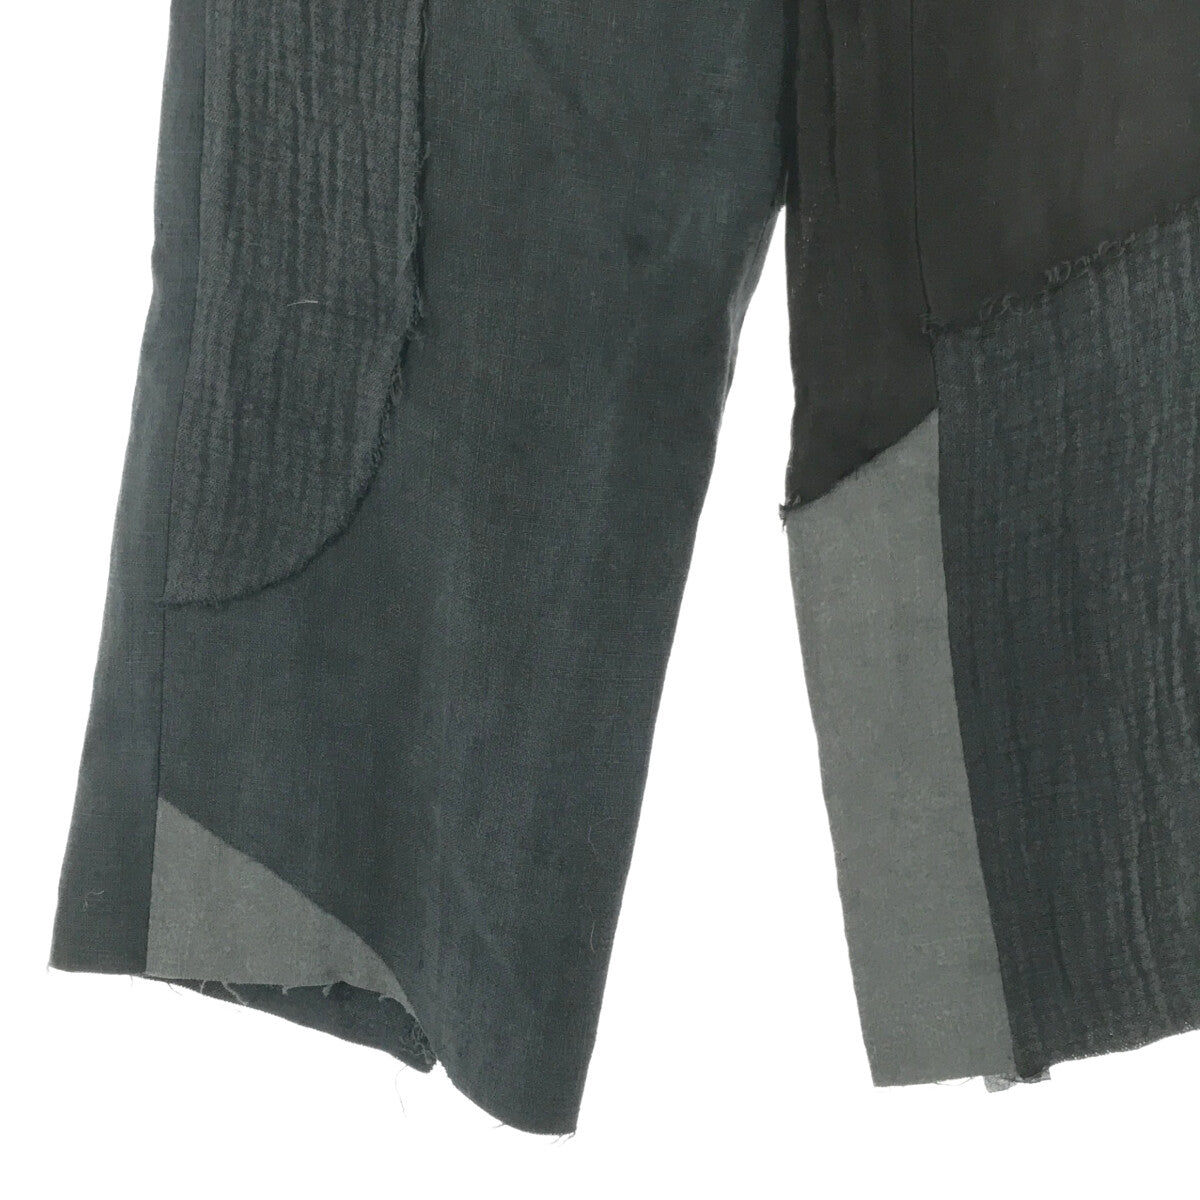 ARCHIVIO J.M.Ribot / アルキビオジェイエムリボット | PA11 Patch Trousers ジャガードパッチワークパンツ | 46 | ブラック/ネイビー | メンズ